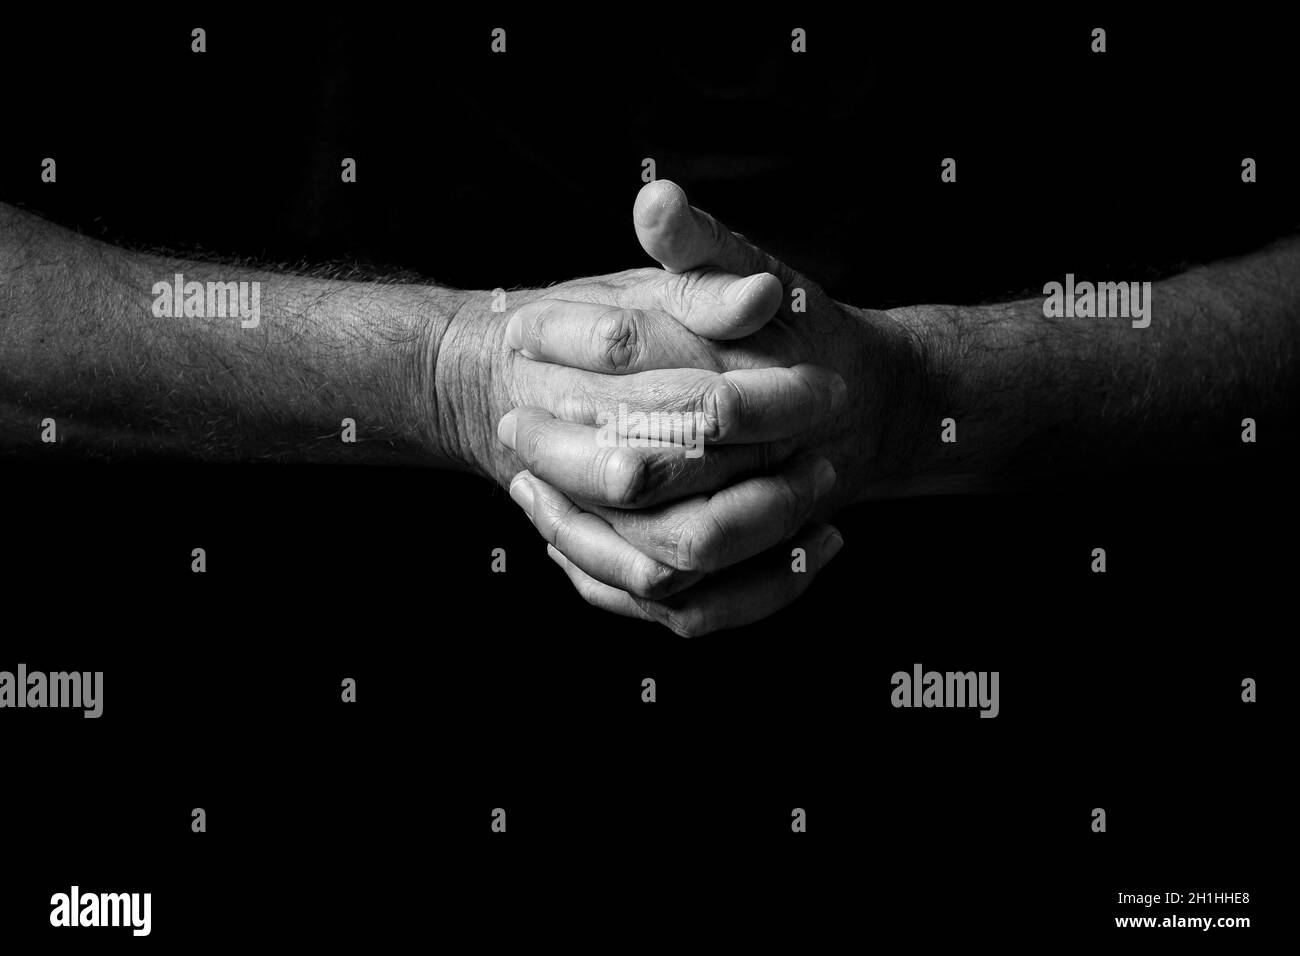 Schwarz-weißes Bild von zerknitterten männlichen Händen, die in Gedanken oder im Gebet zusammengehalten und vor einem schwarzen Hintergrund mit dramatischem Licht isoliert wurden Stockfoto